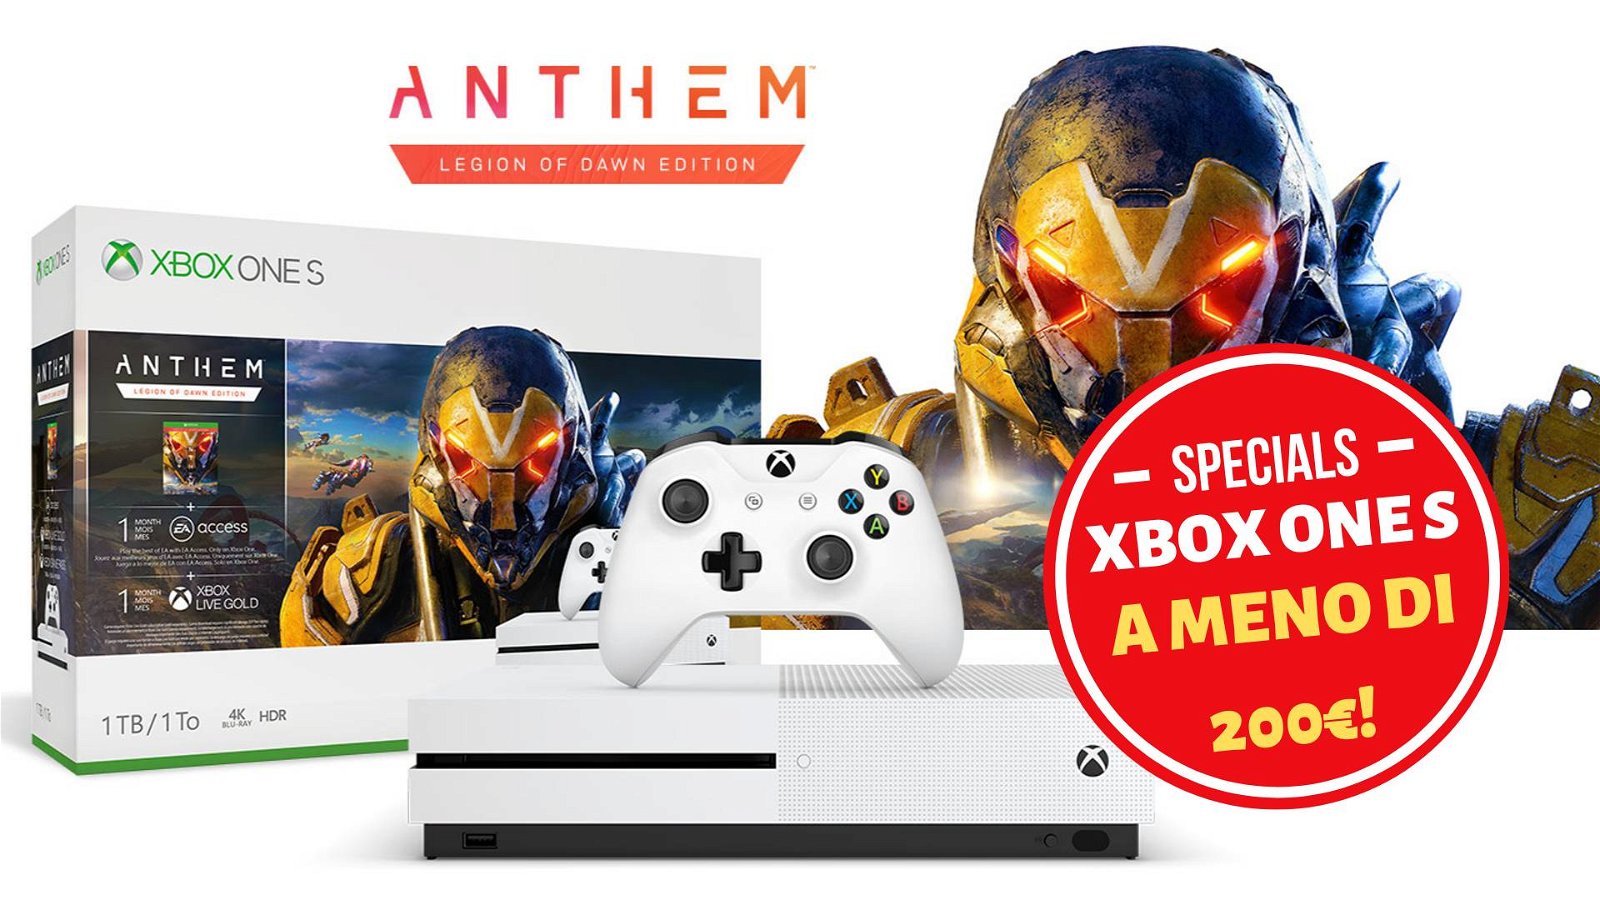 Immagine di Offerta Xbox One S a meno di 200€ con Anthem incluso